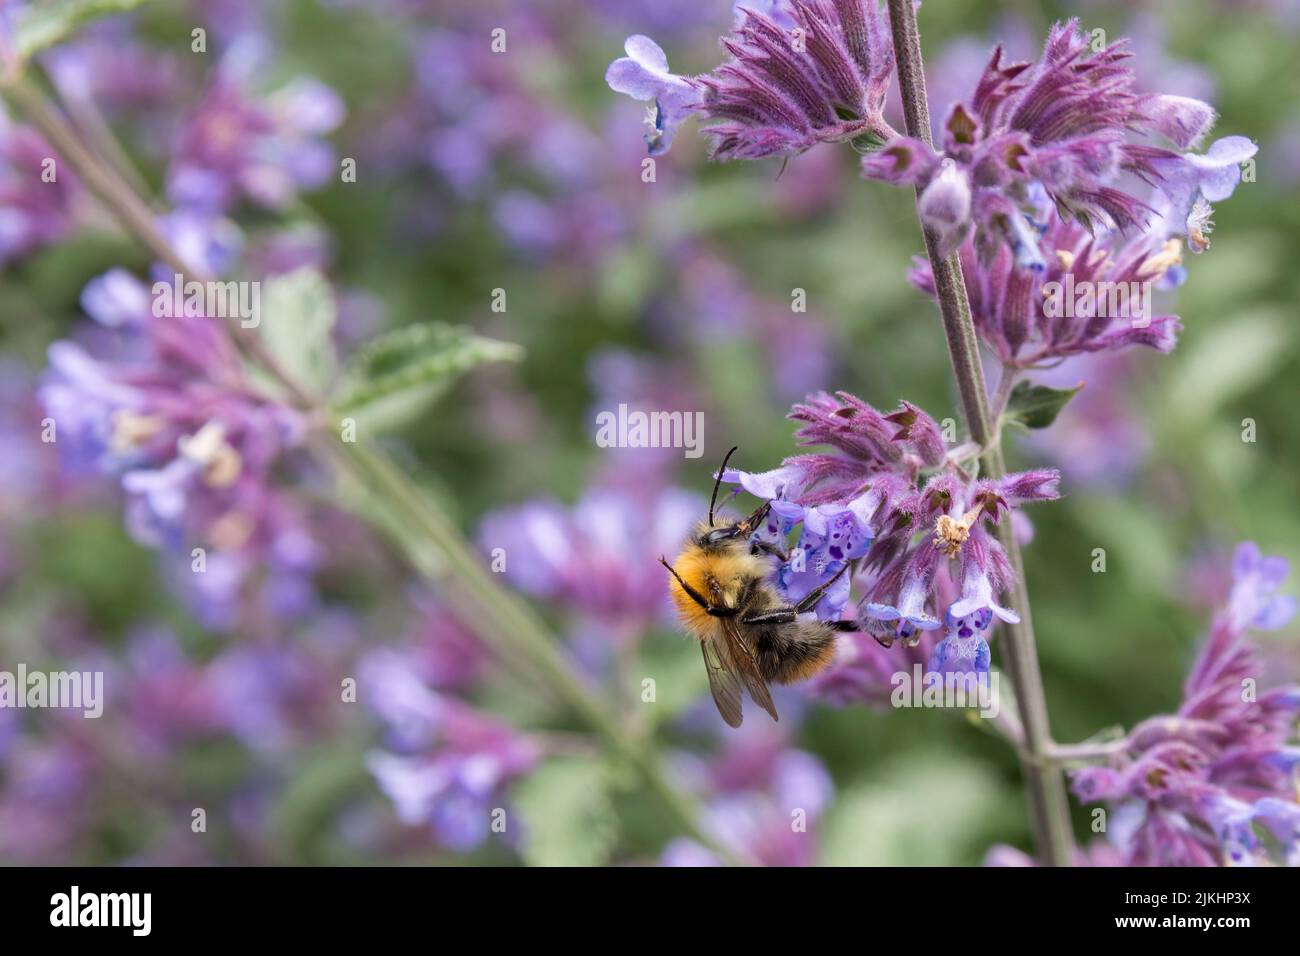 Carder Biene einer von mehreren ähnlichen Stielen, die sich von purpurnen Blüten ernähren, rotbraun behaarte Thorax buffish orange Abdomen schwarzer Kopf Beine Antennea Stockfoto